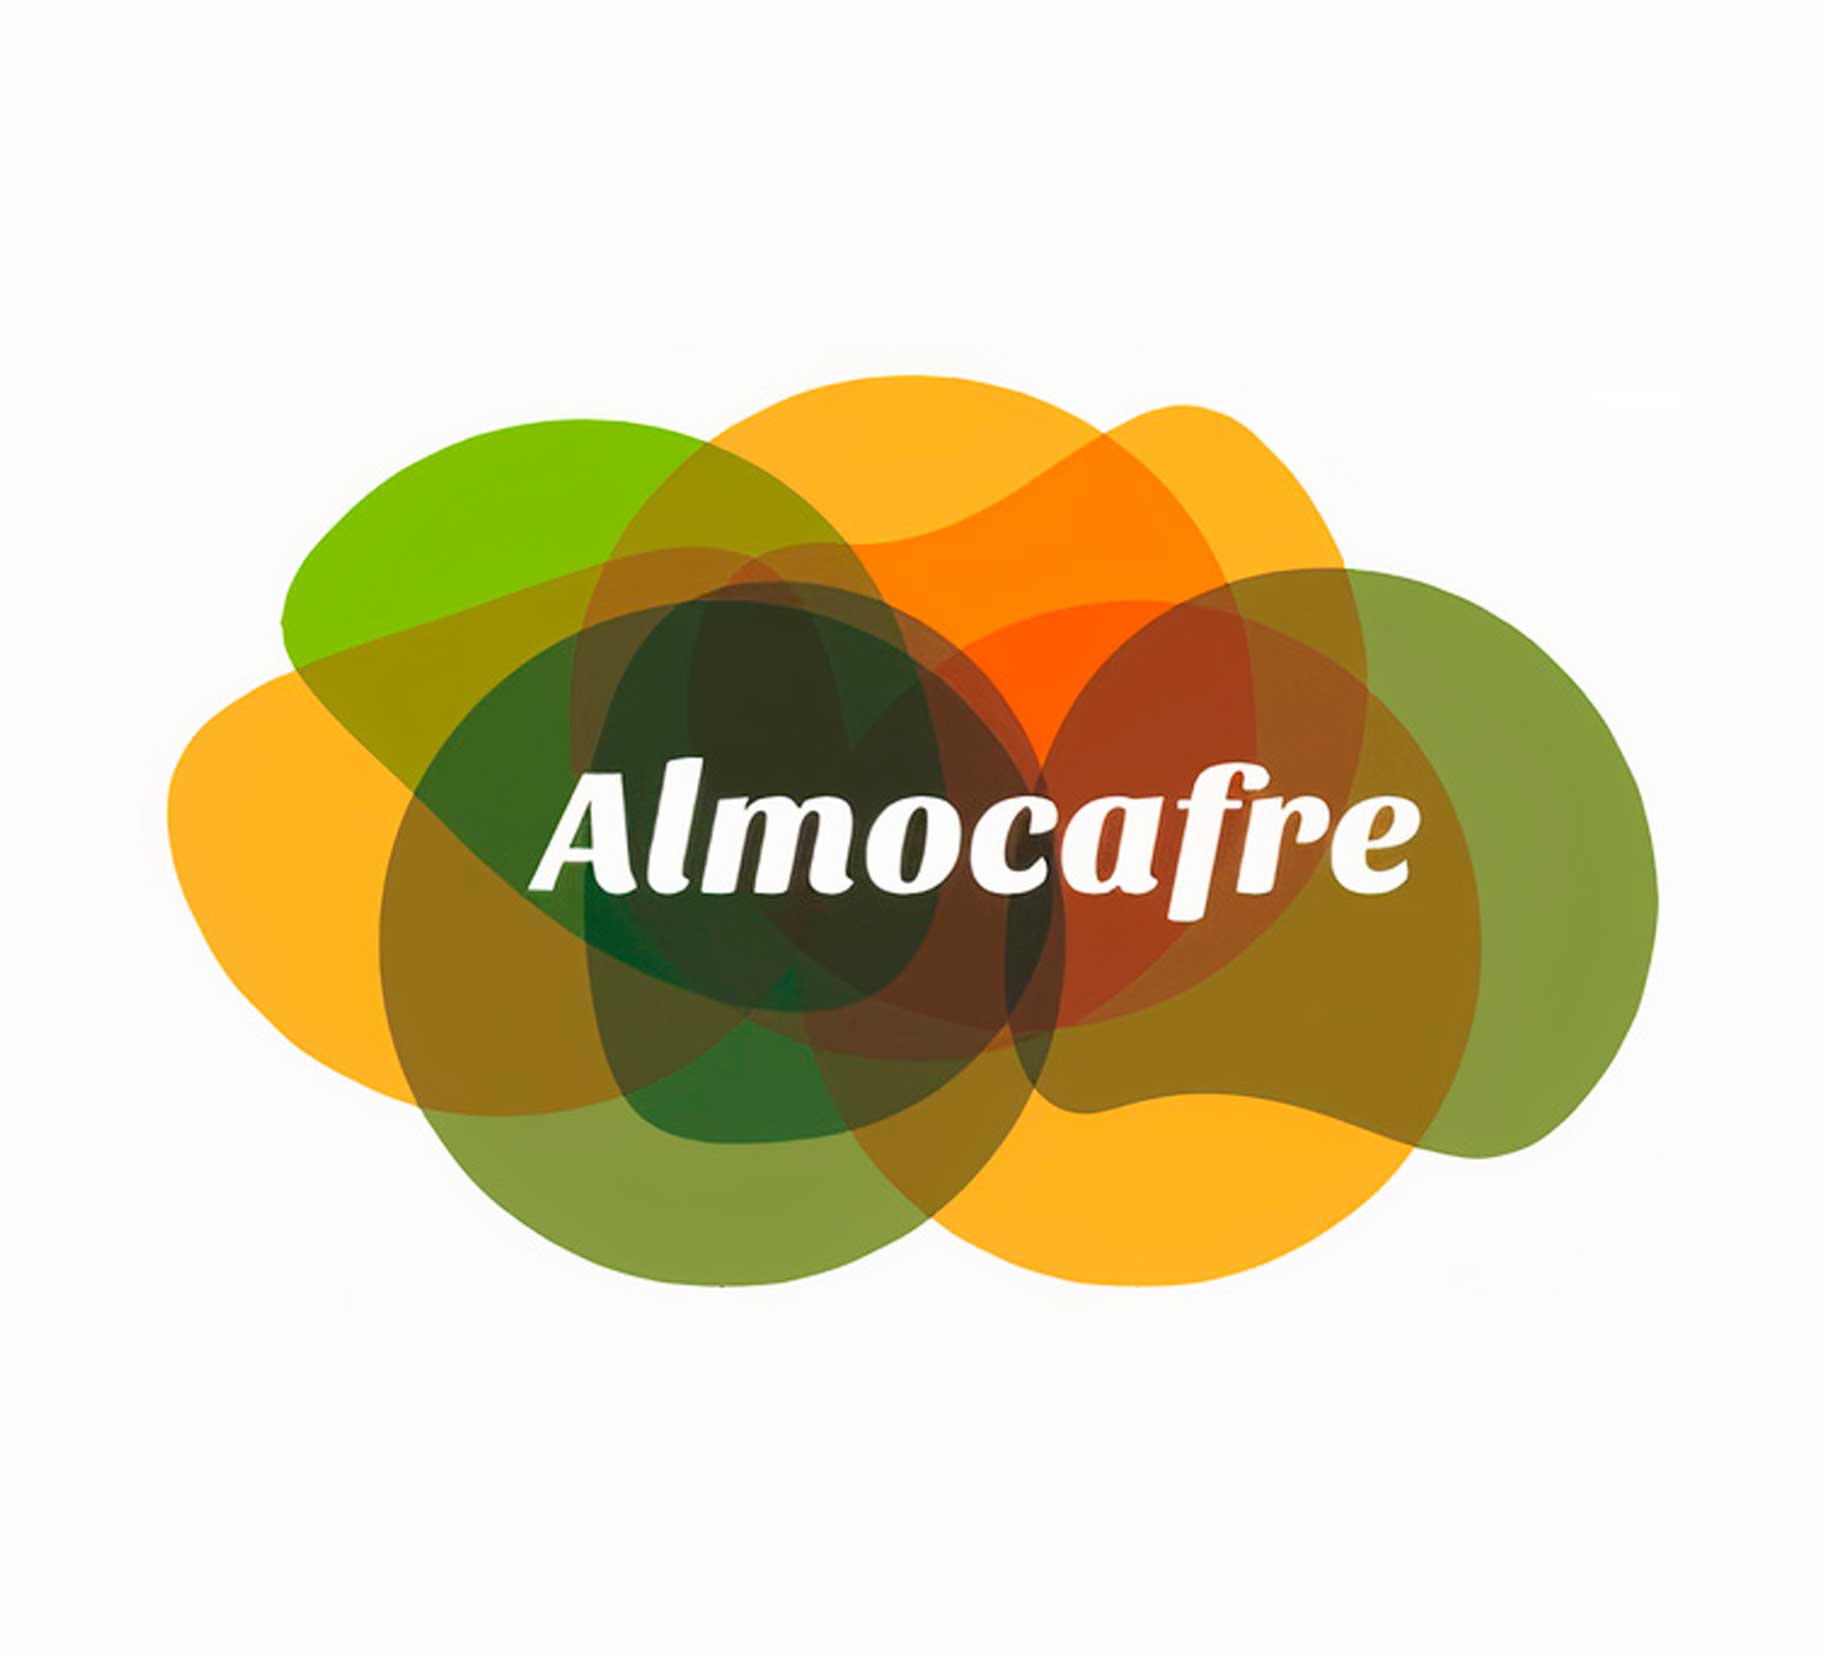 Almocafre